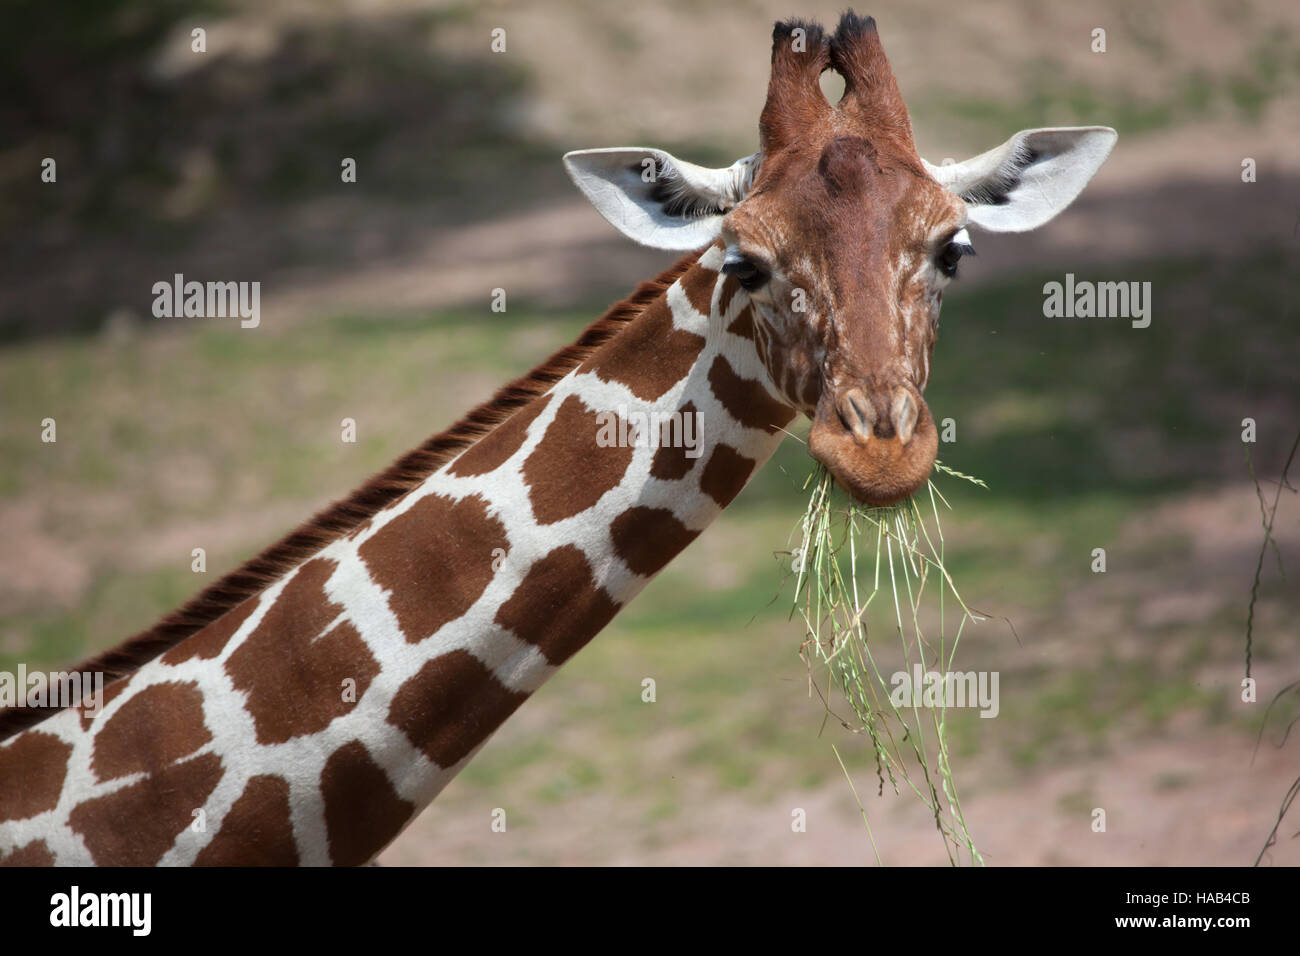 Giraffe réticulée (Giraffa camelopardalis reticulata), également connu sous le nom de la girafe. Banque D'Images